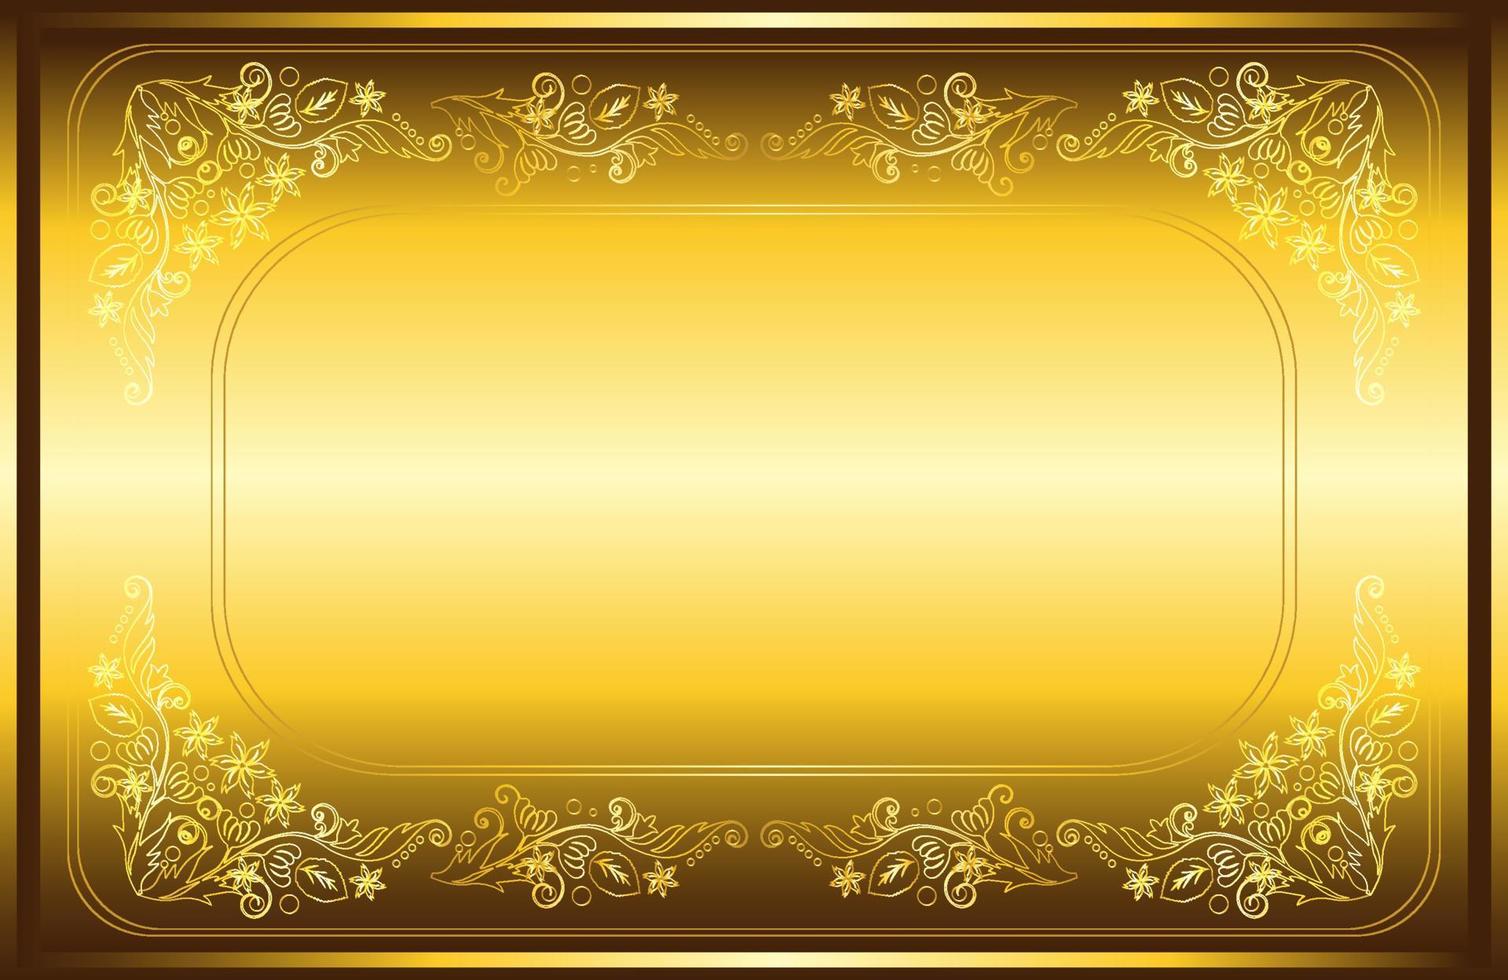 disegno di carta cornice bordo floreale dorato vettore